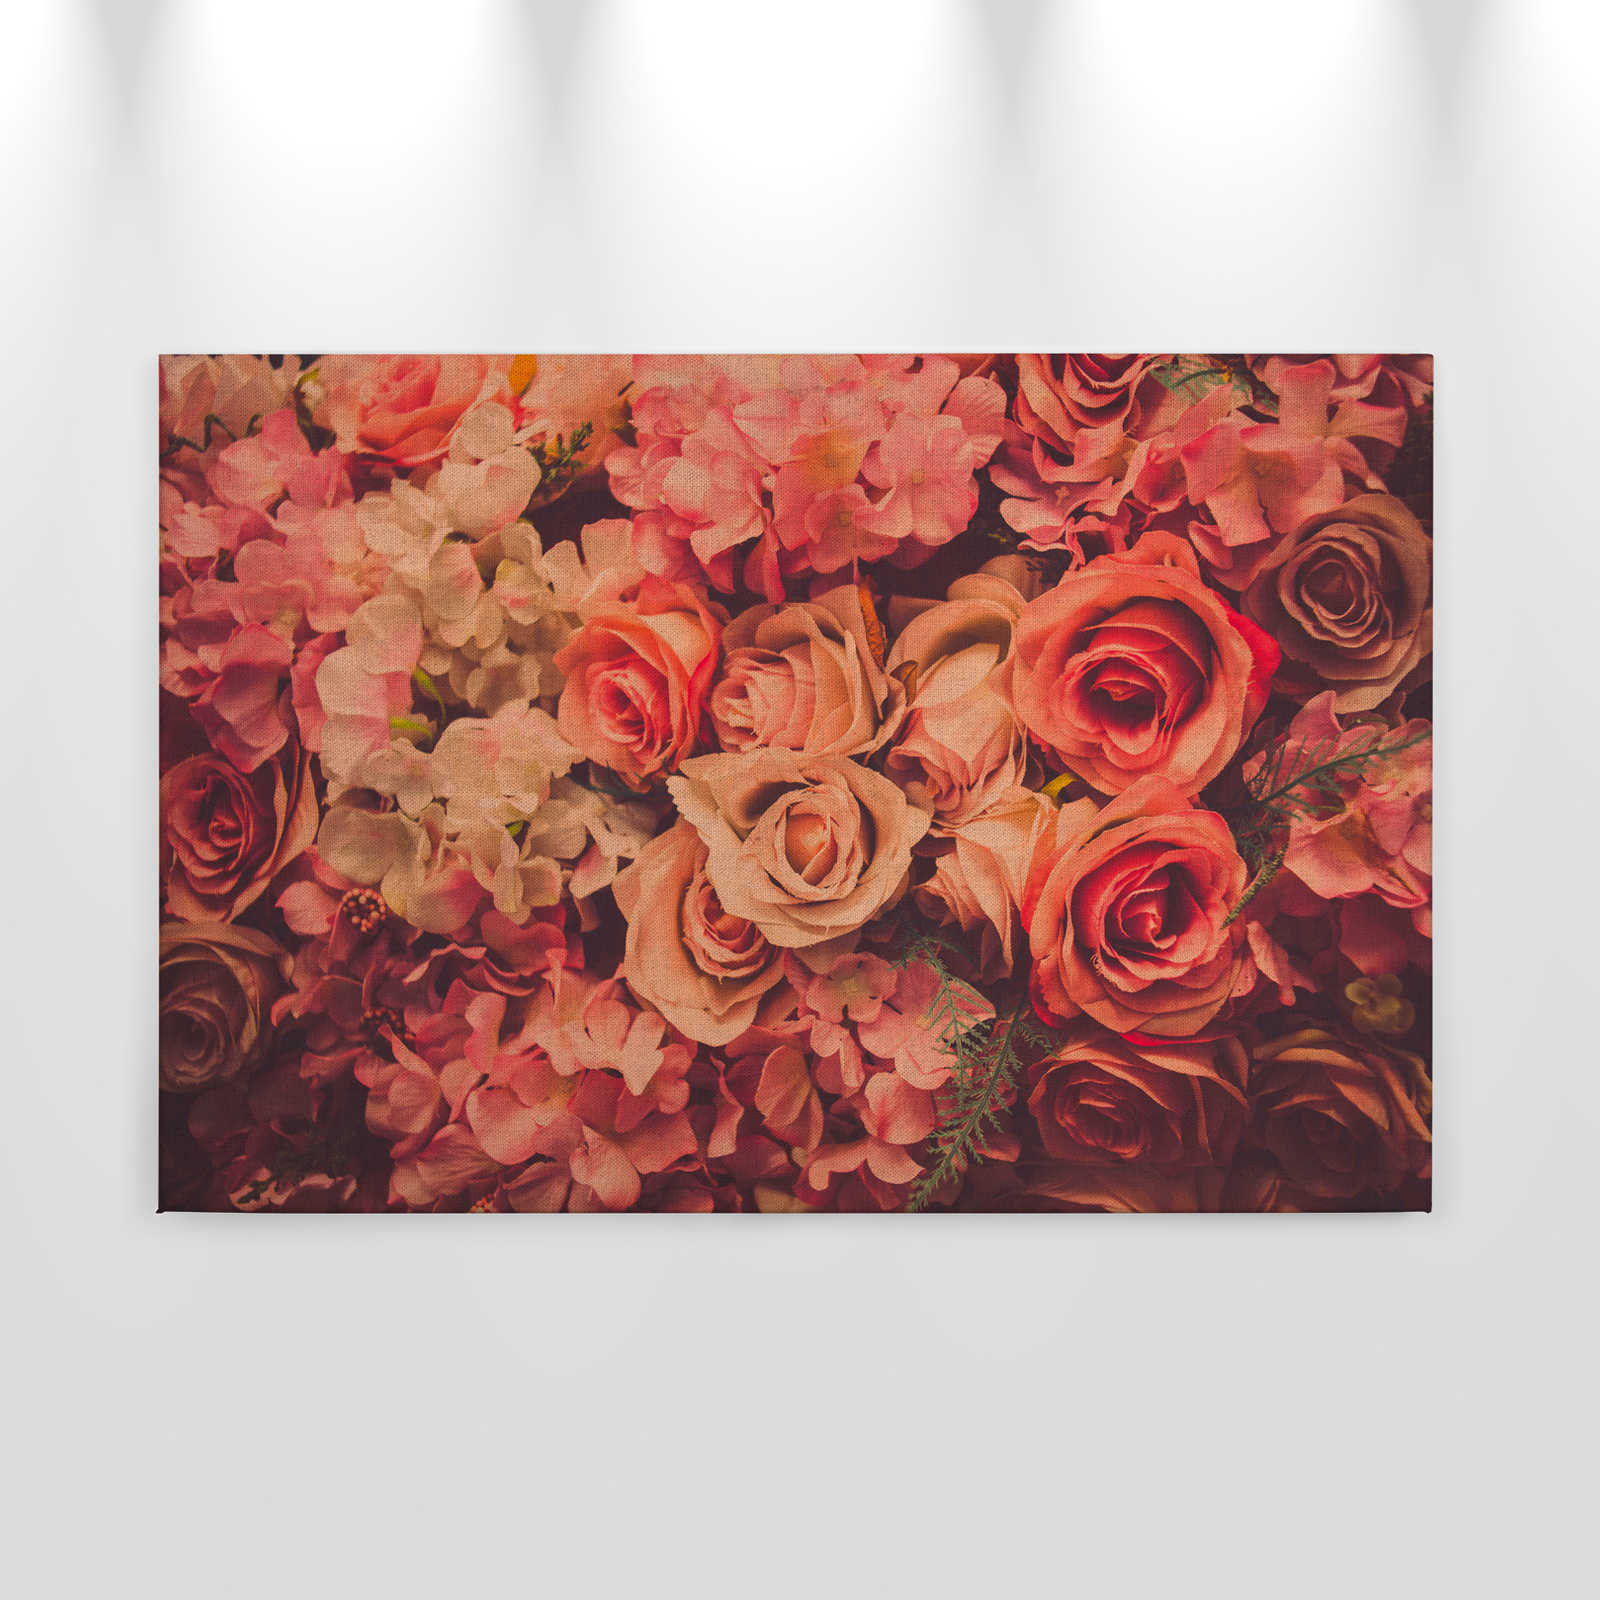             Canvas met romantisch rozenmotief in linnenlook - 0,90 m x 0,60 m
        